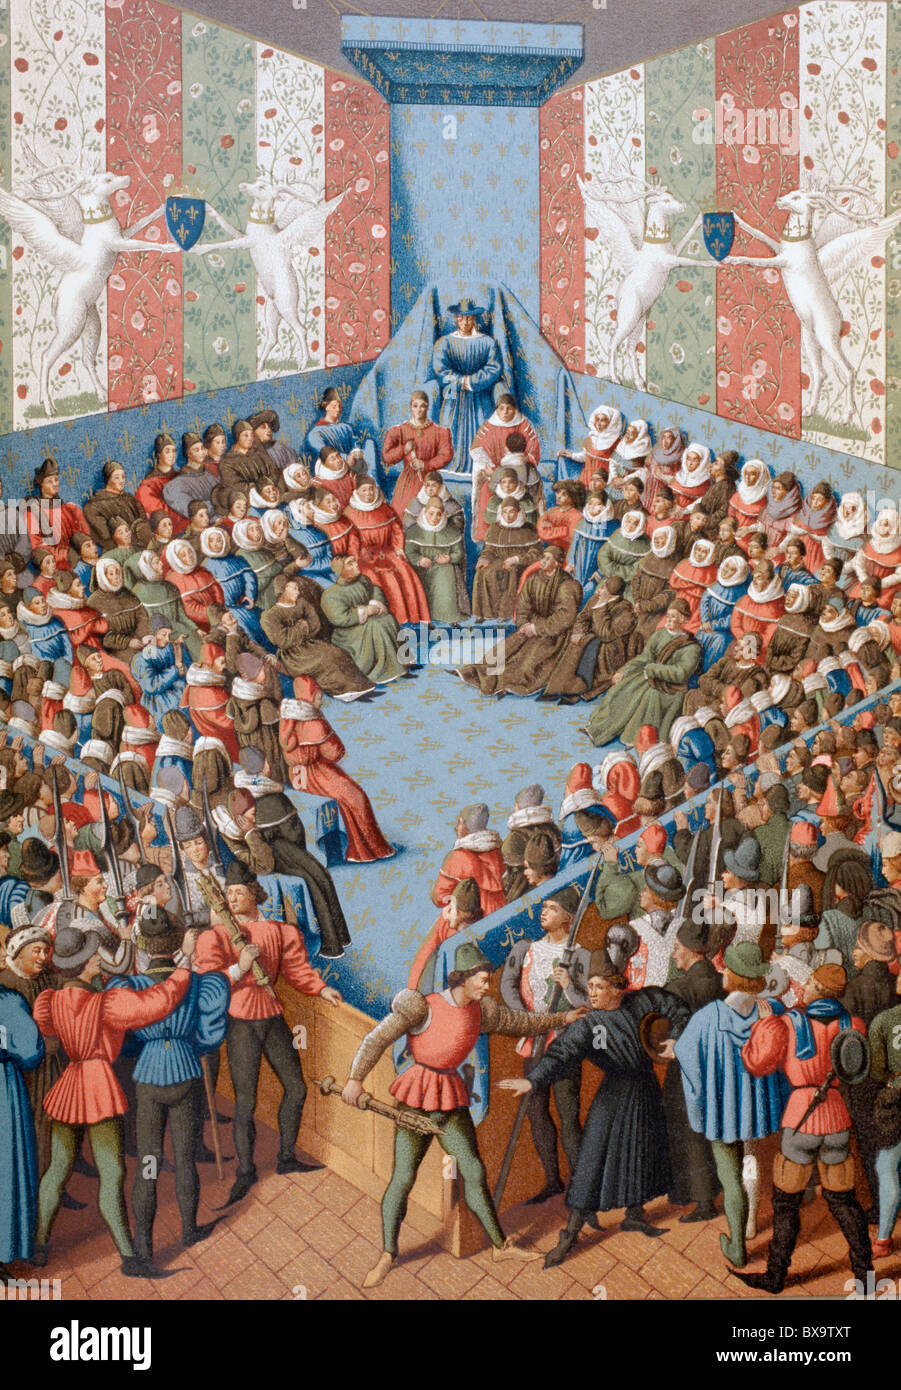 Jean II, Duc d'Alençon, 1409 - 1476, en procès accusé d'avoir conspiré avec les Anglais contre la France. Banque D'Images